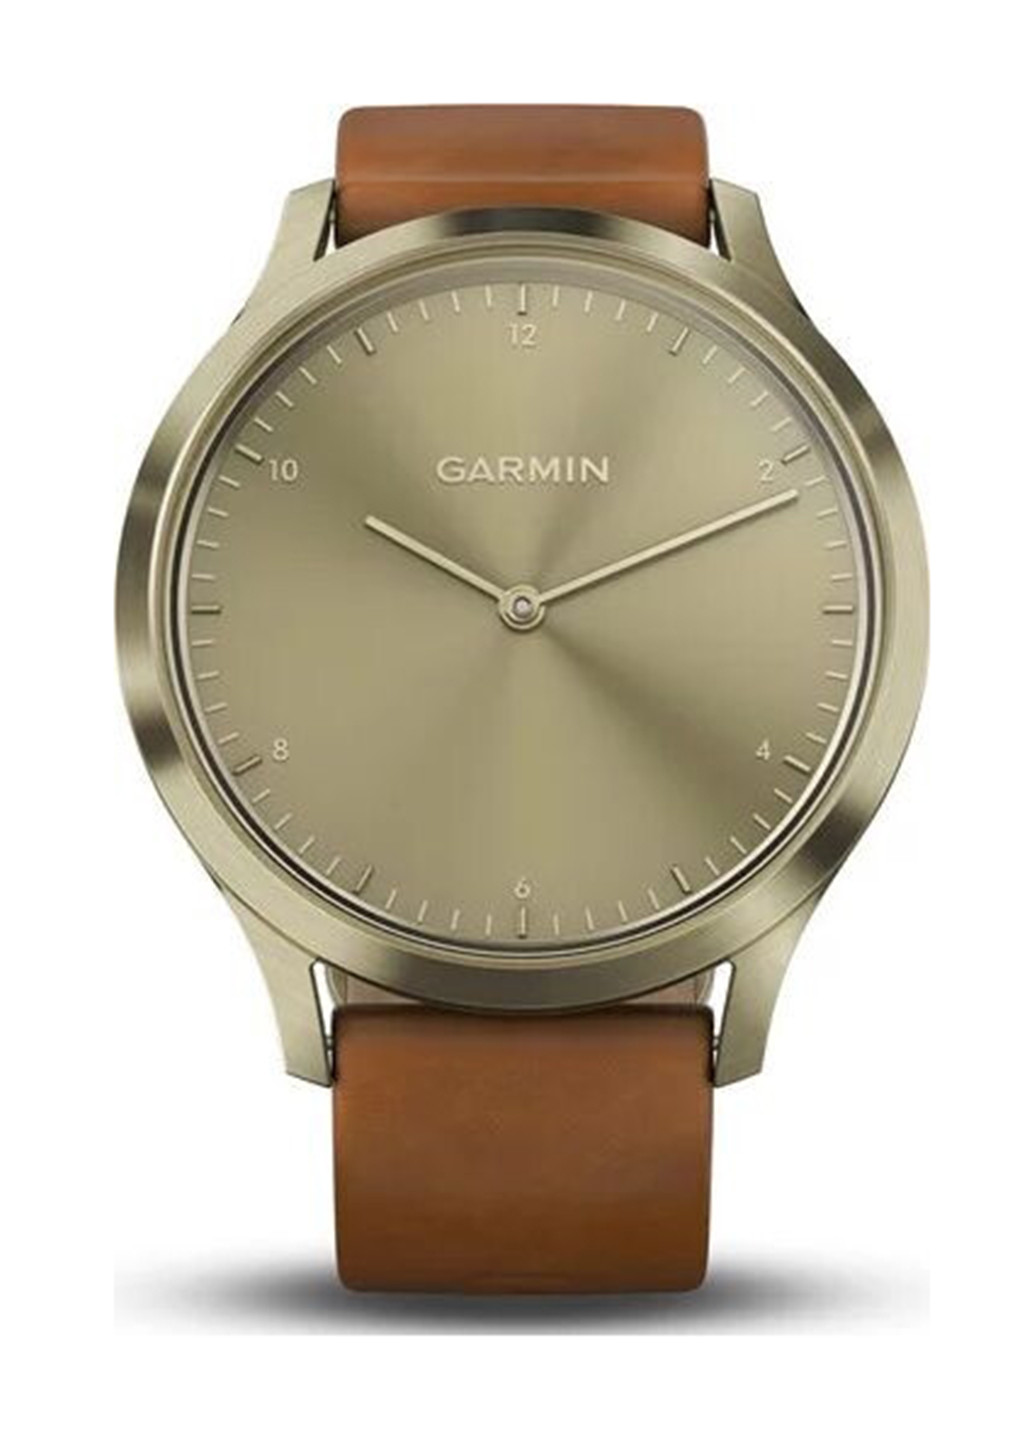 Смарт-часы Garmin vivomove hr premium gold with light brown leather band (151426571)